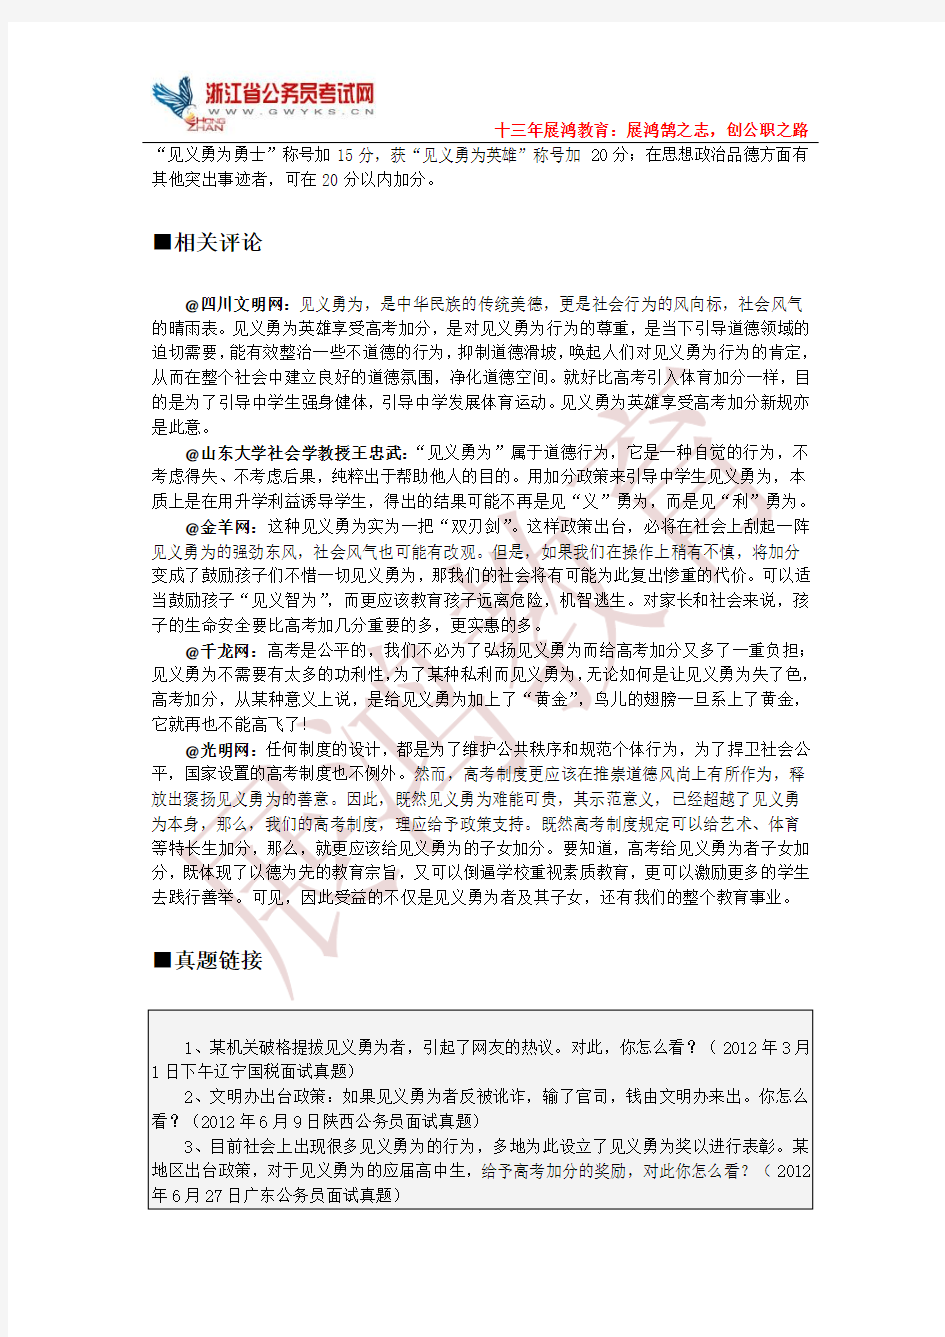 2014年浙江德清县事业单位统考面试最后热点押题补充资料